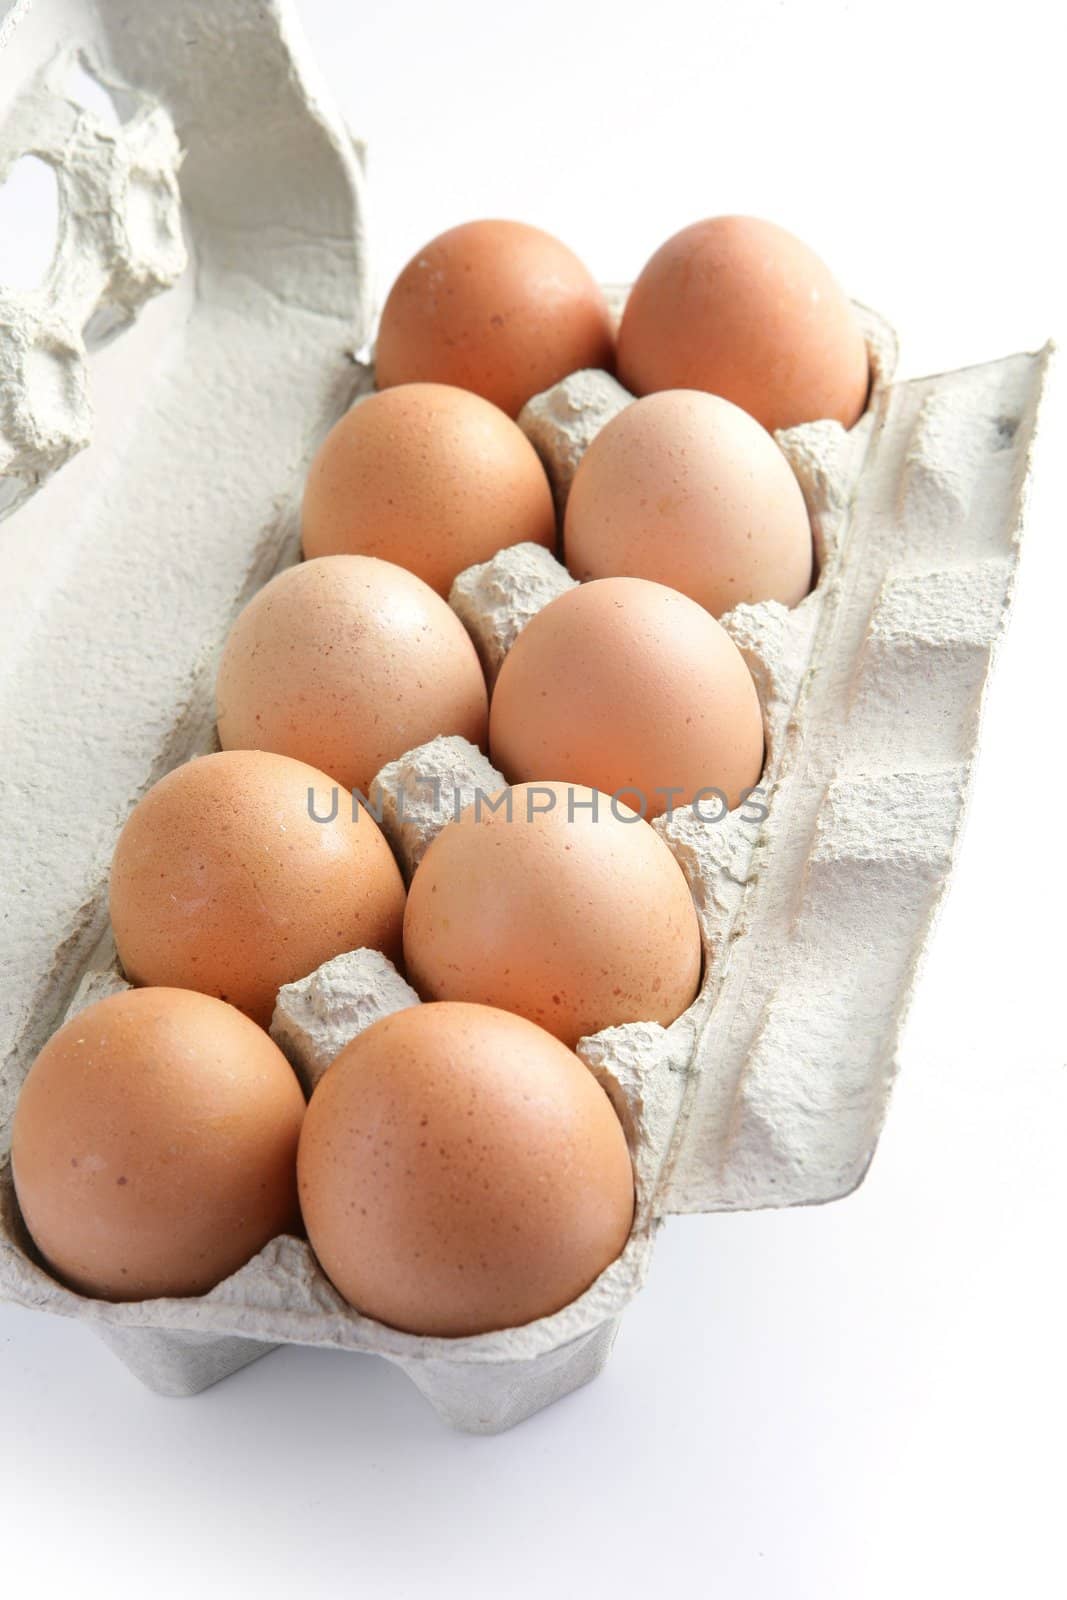 Dozen eggs by phovoir